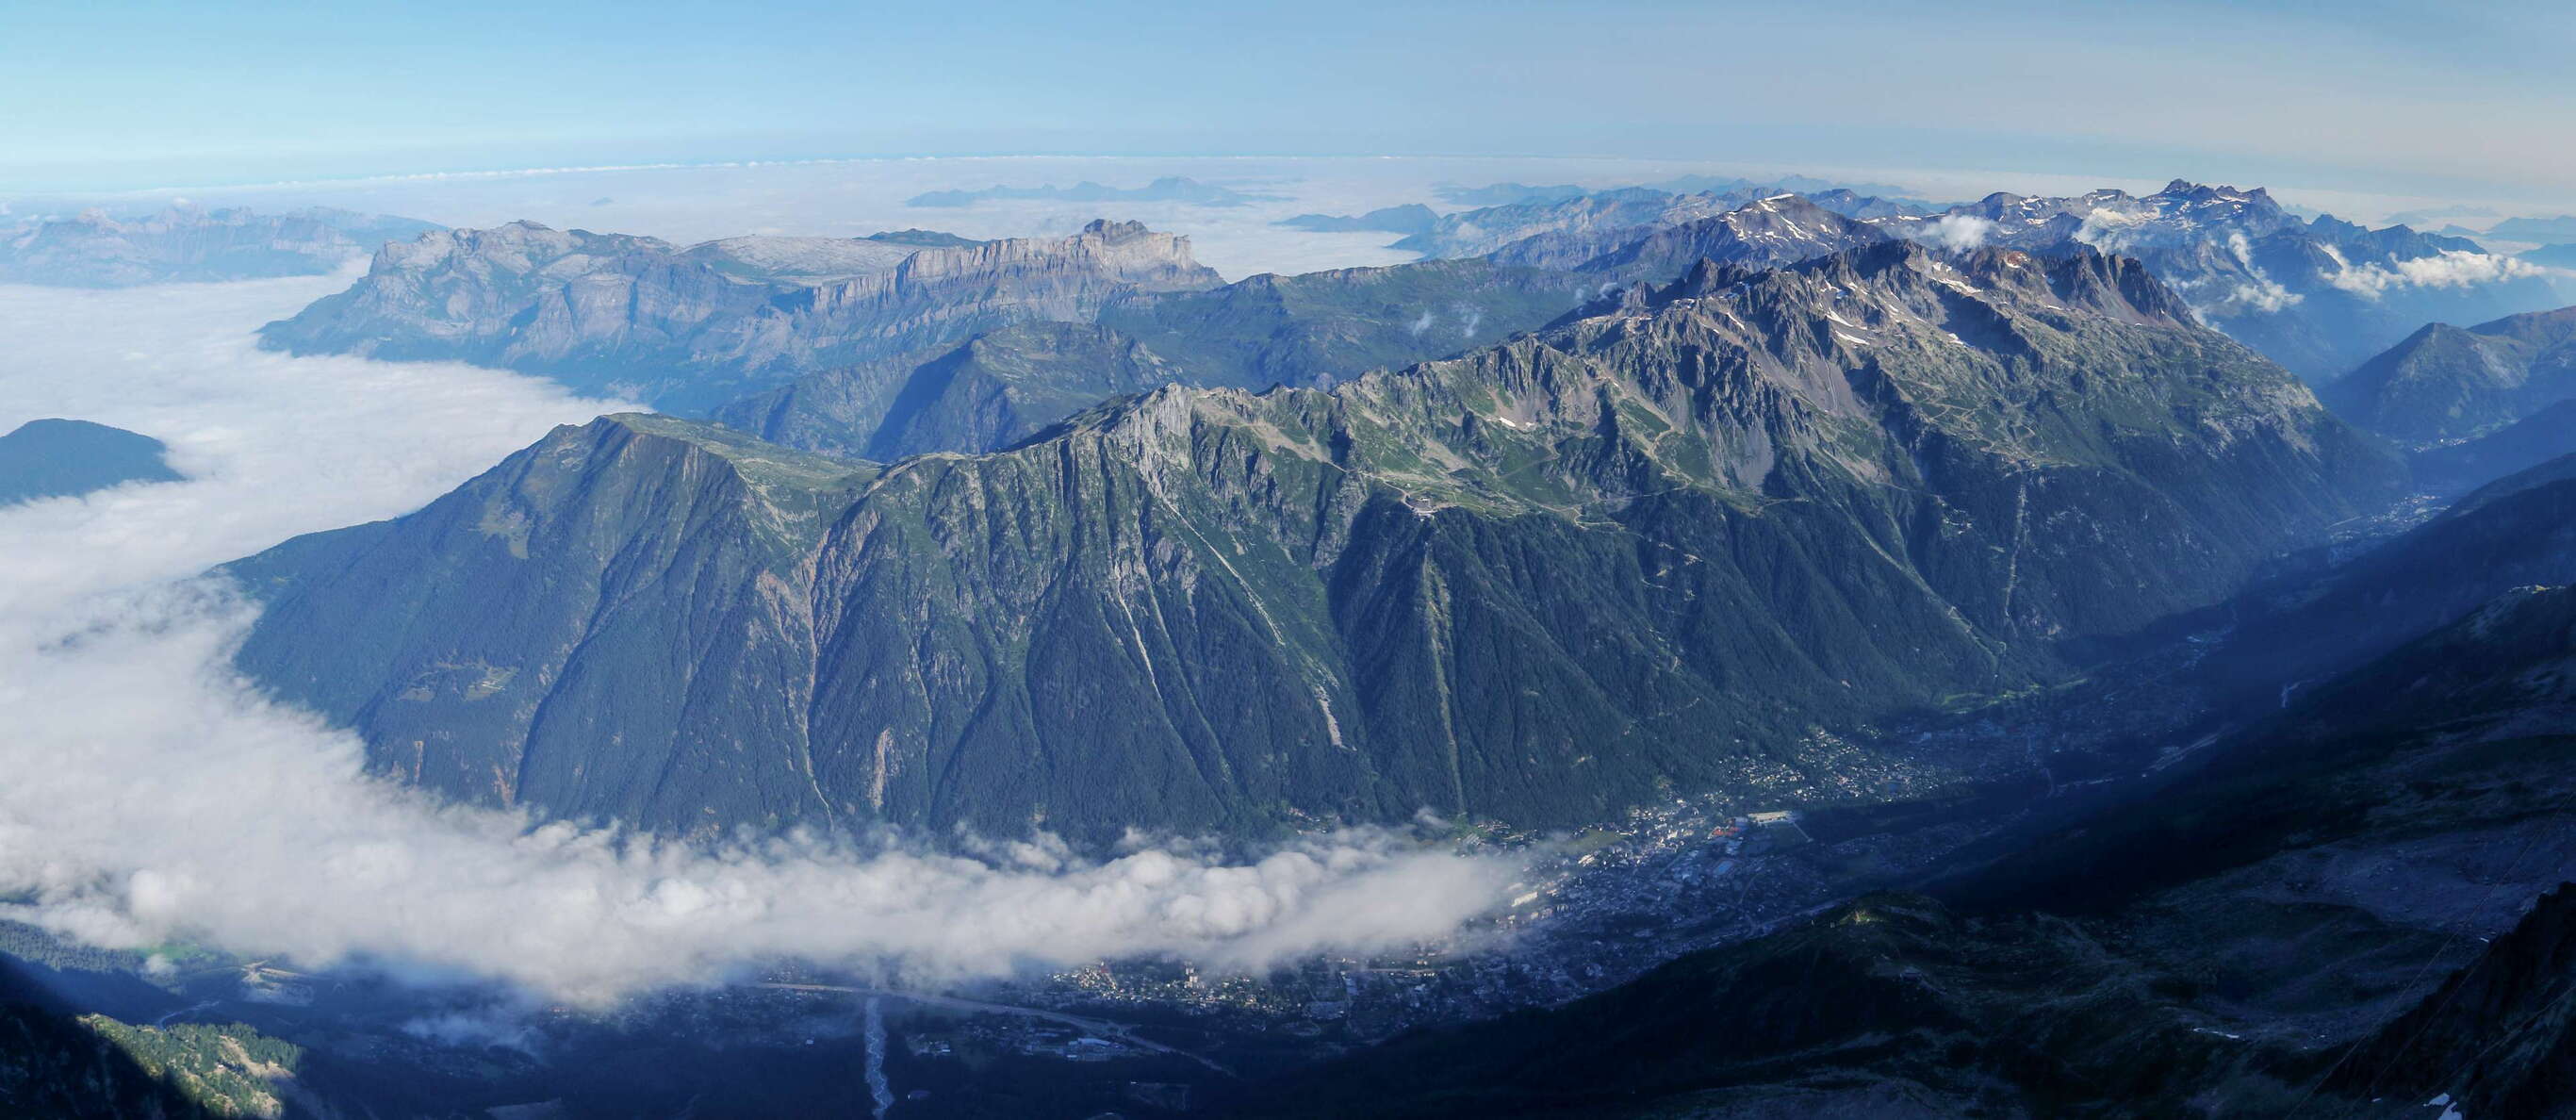 Chamonix | Panoramic view